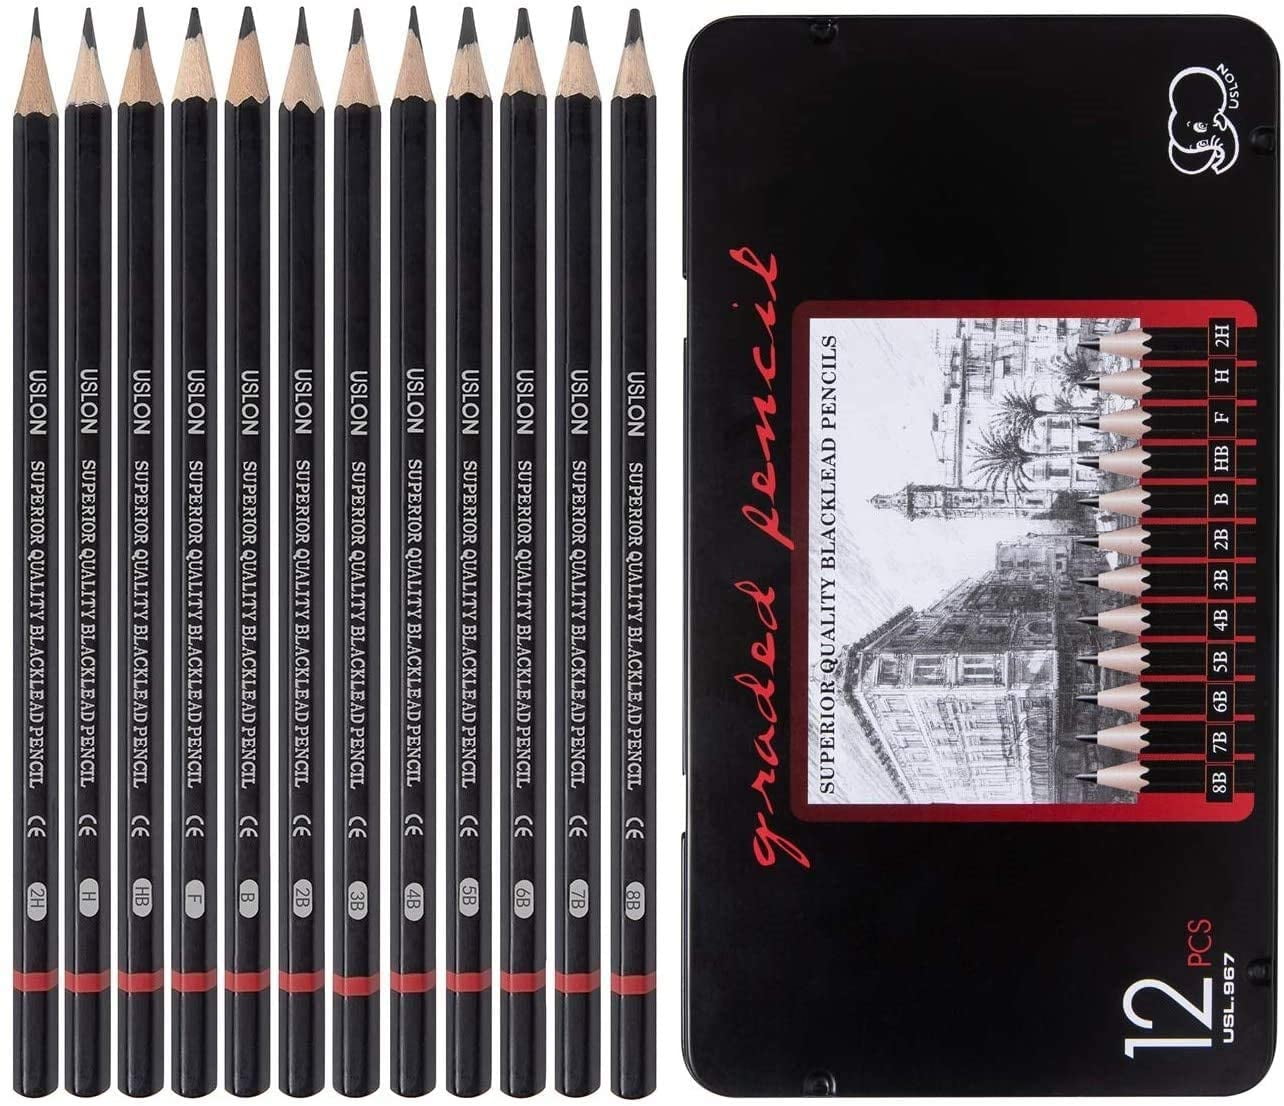 12 Professional Drawing Pencils 8B to 2H Sketch Kit, Set Faber-castell Drawing  Kit, Pencil Set Sketching, Scrapbooking, Anime, Manga 